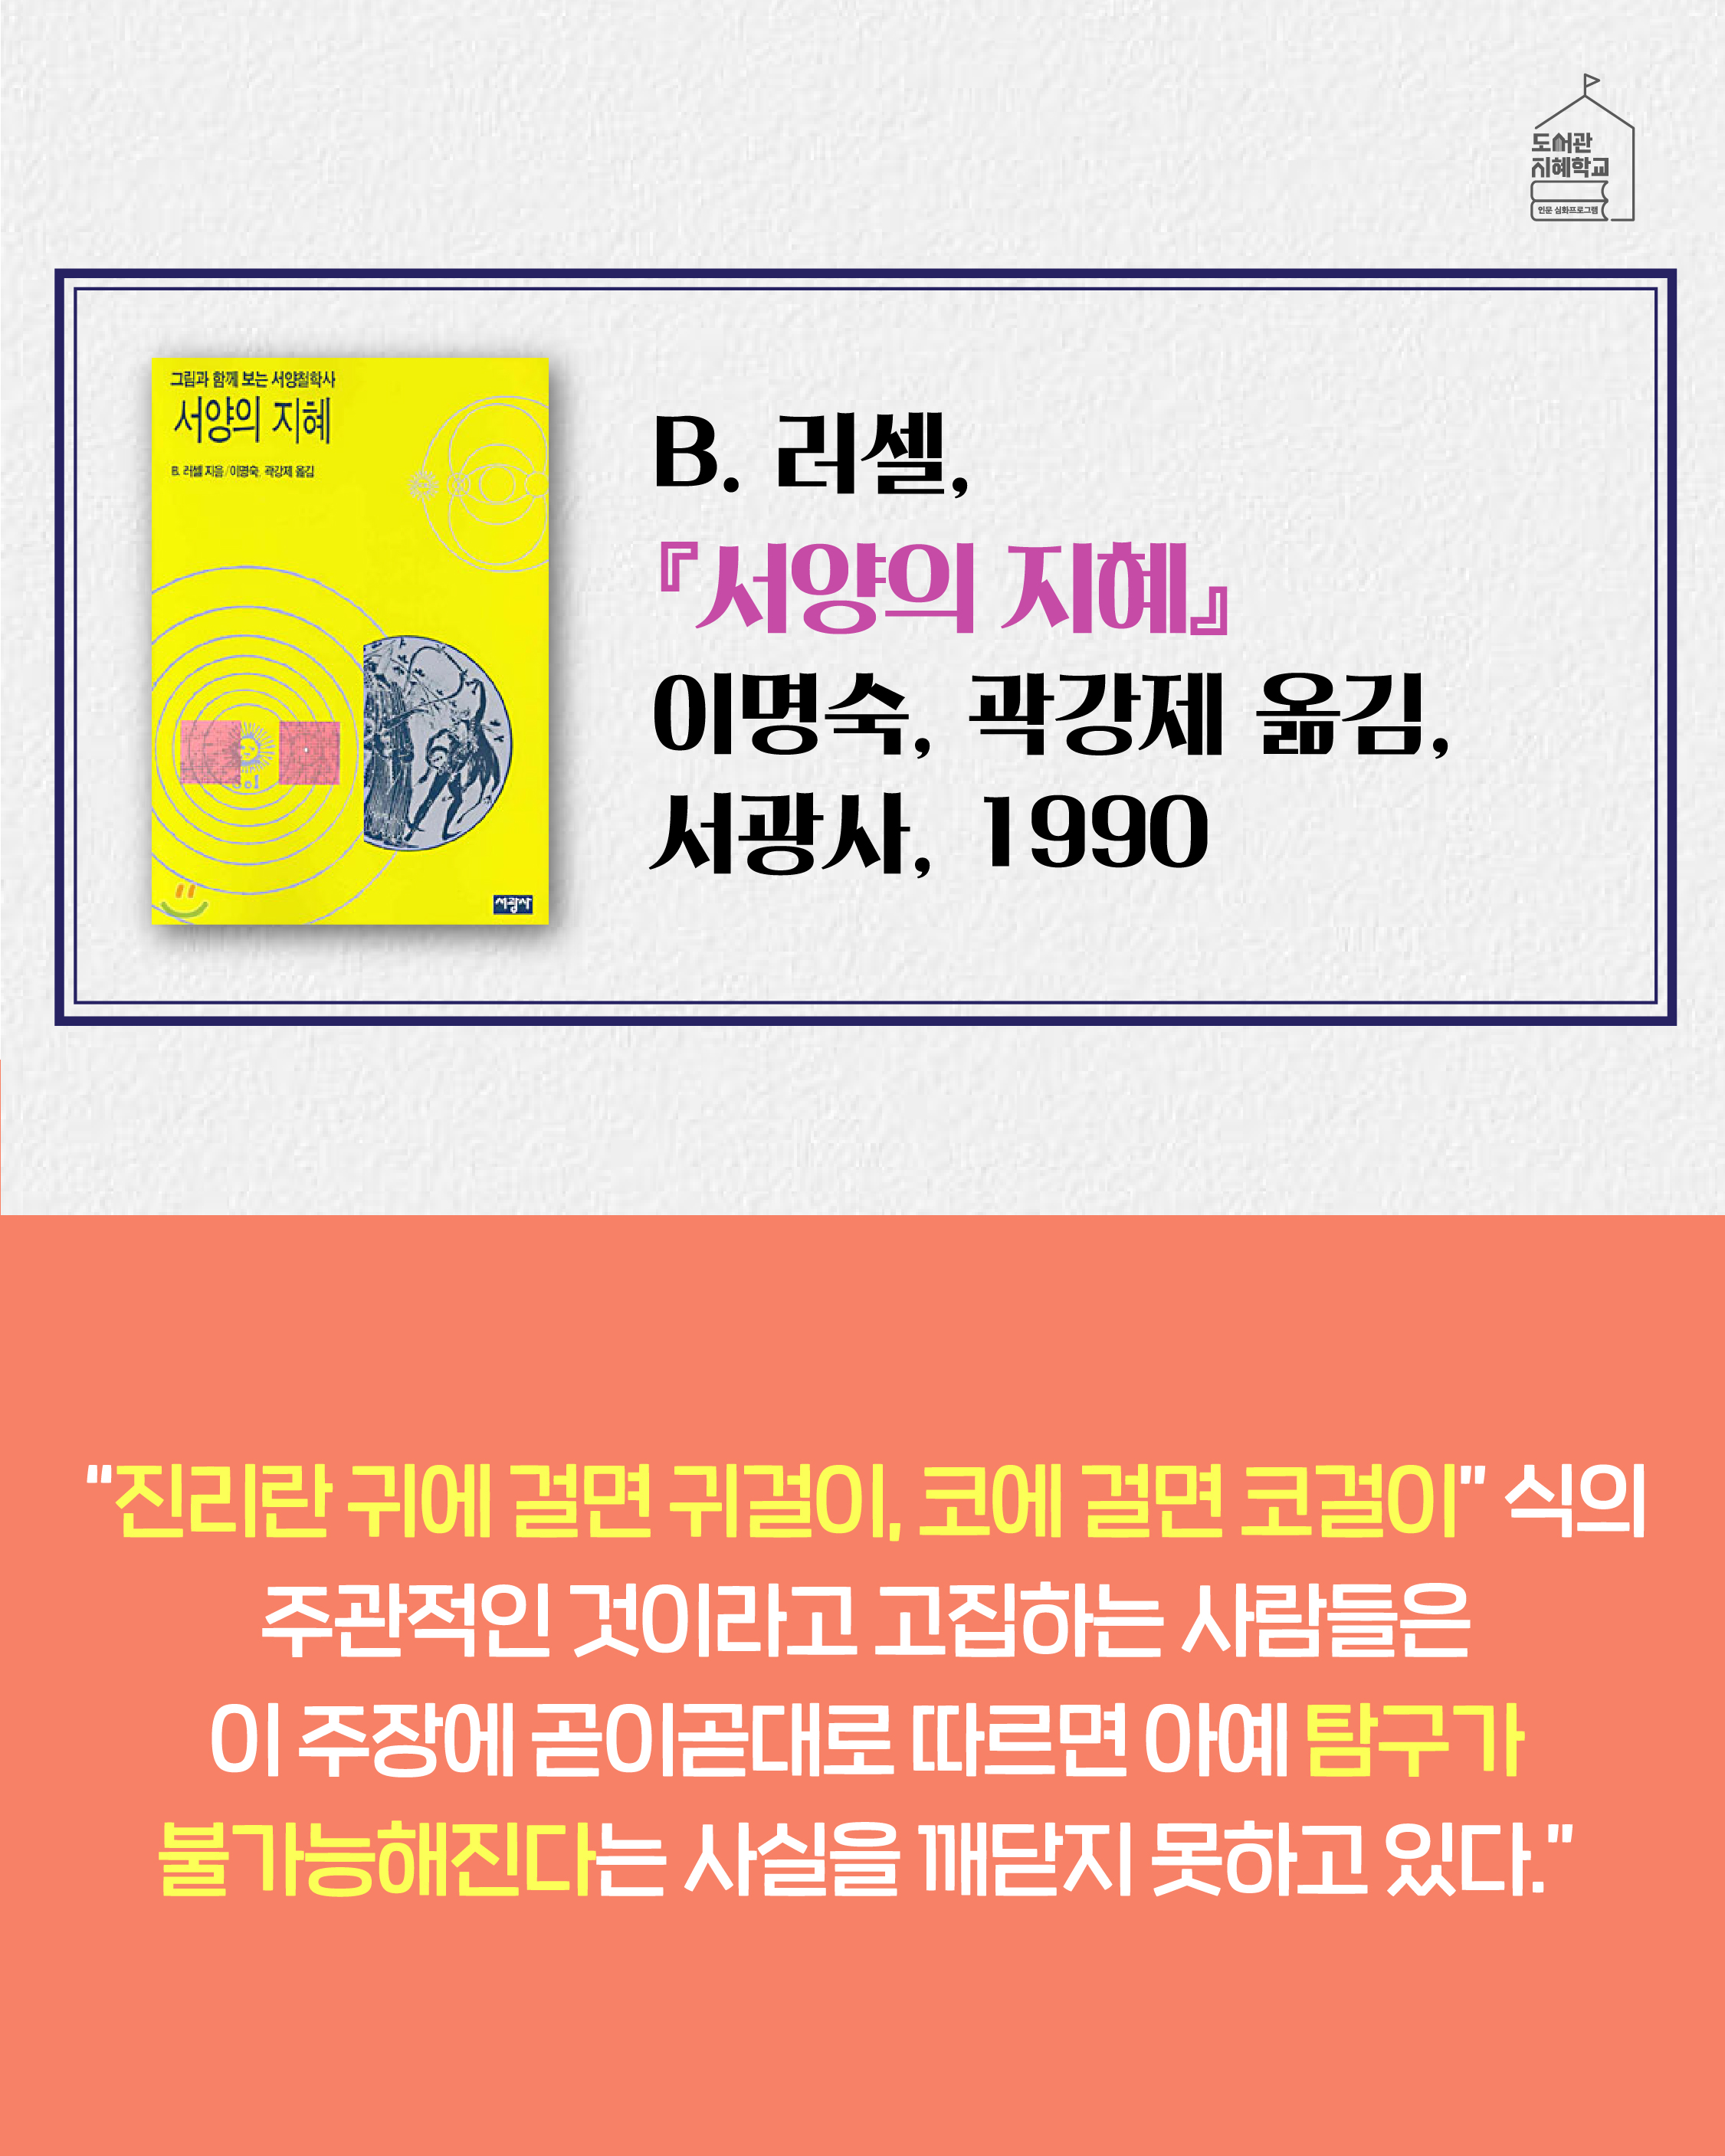 서양의 지혜 B. 러셀, 이명숙, 곽강제 옮김, 서광사, 1990. 